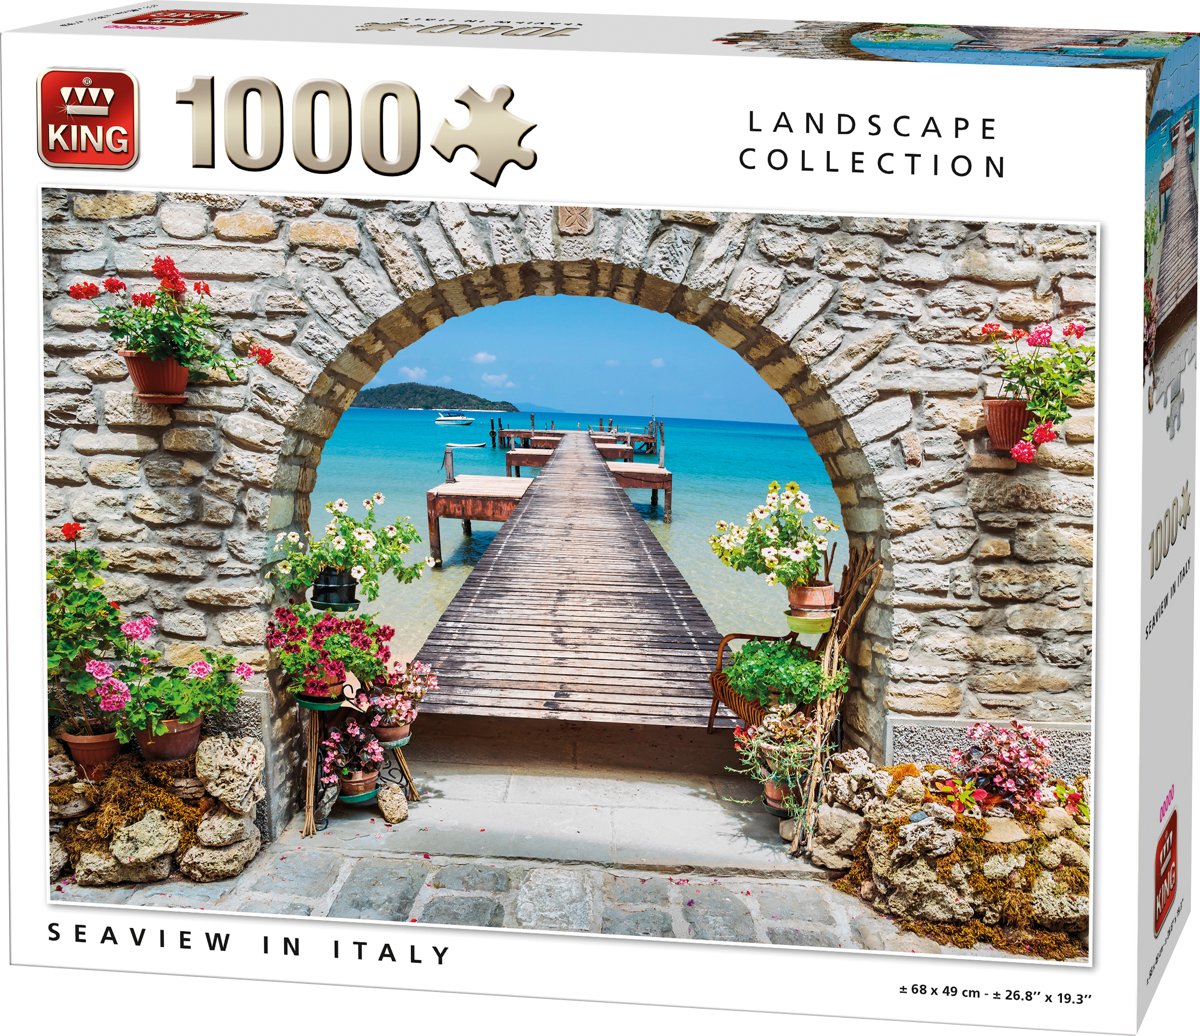 King Puzzel 1000 Stukjes (68 x 49 cm) - Seaview in Italie - Legpuzzel Landschap